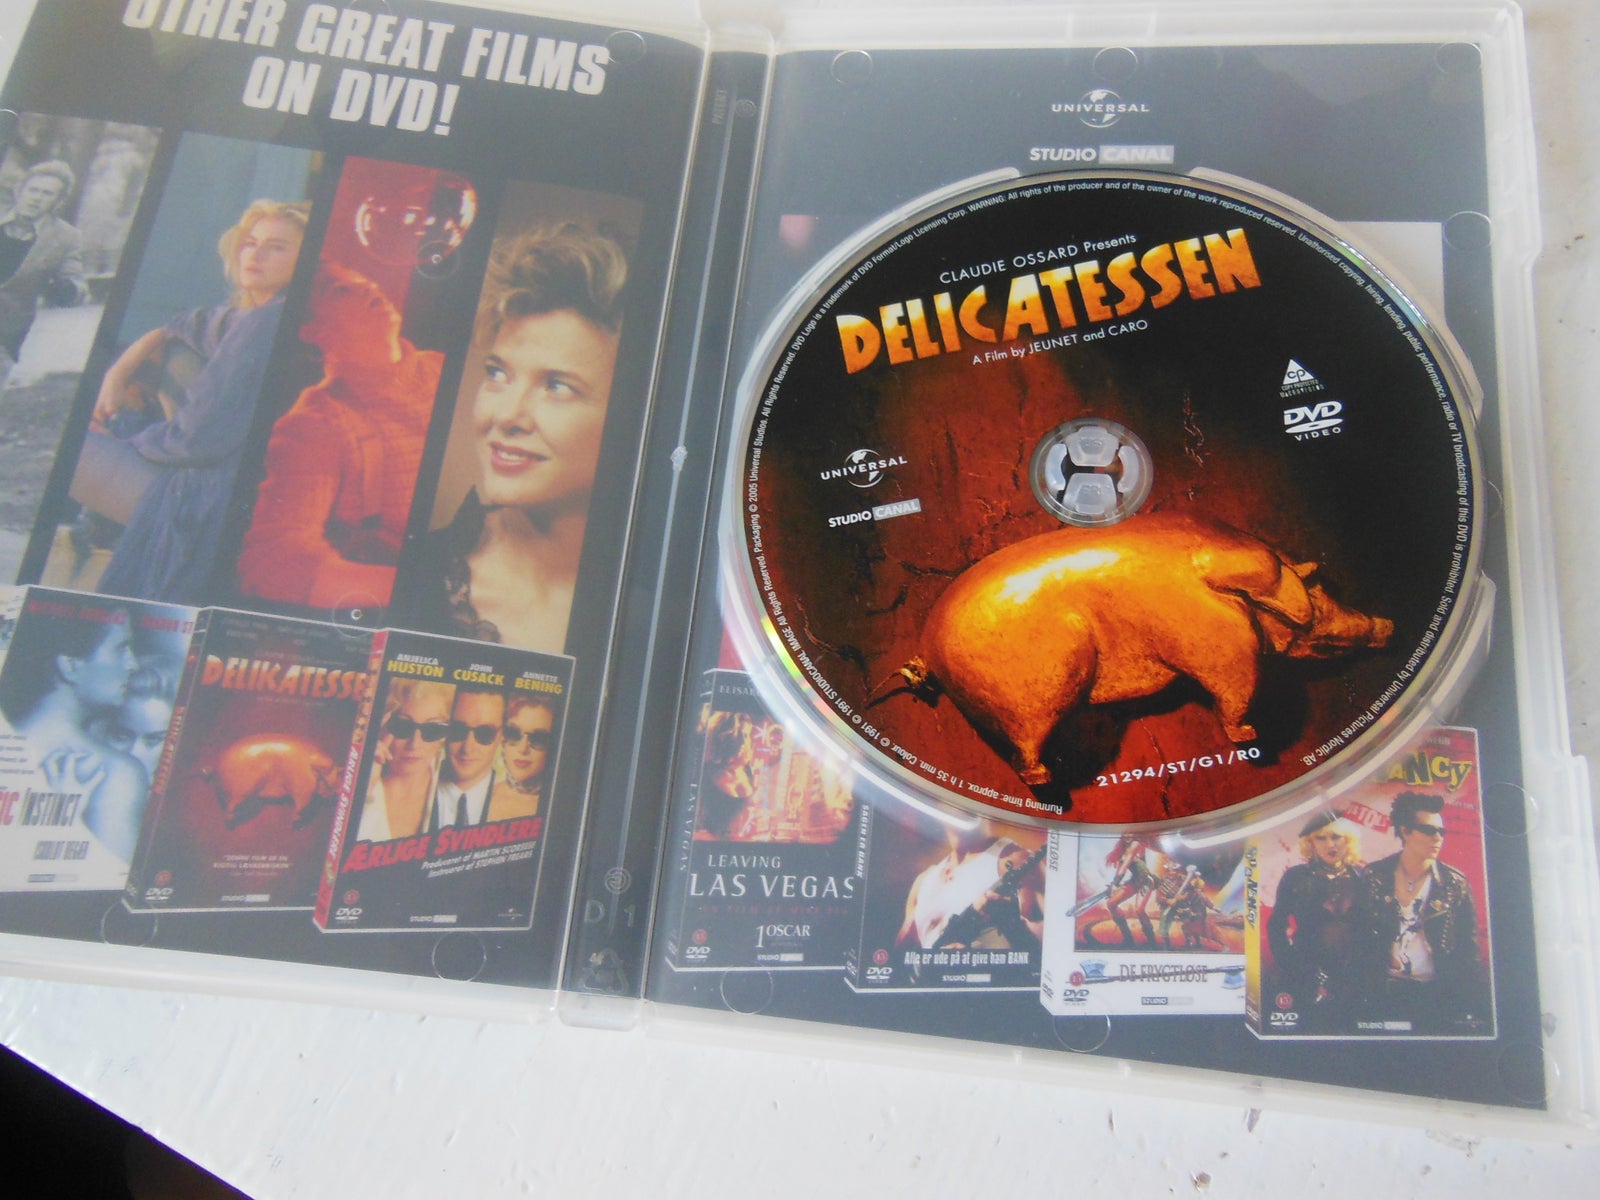 Delicatessen (dk tekst, instruktør Jeunet og Caro, DVD